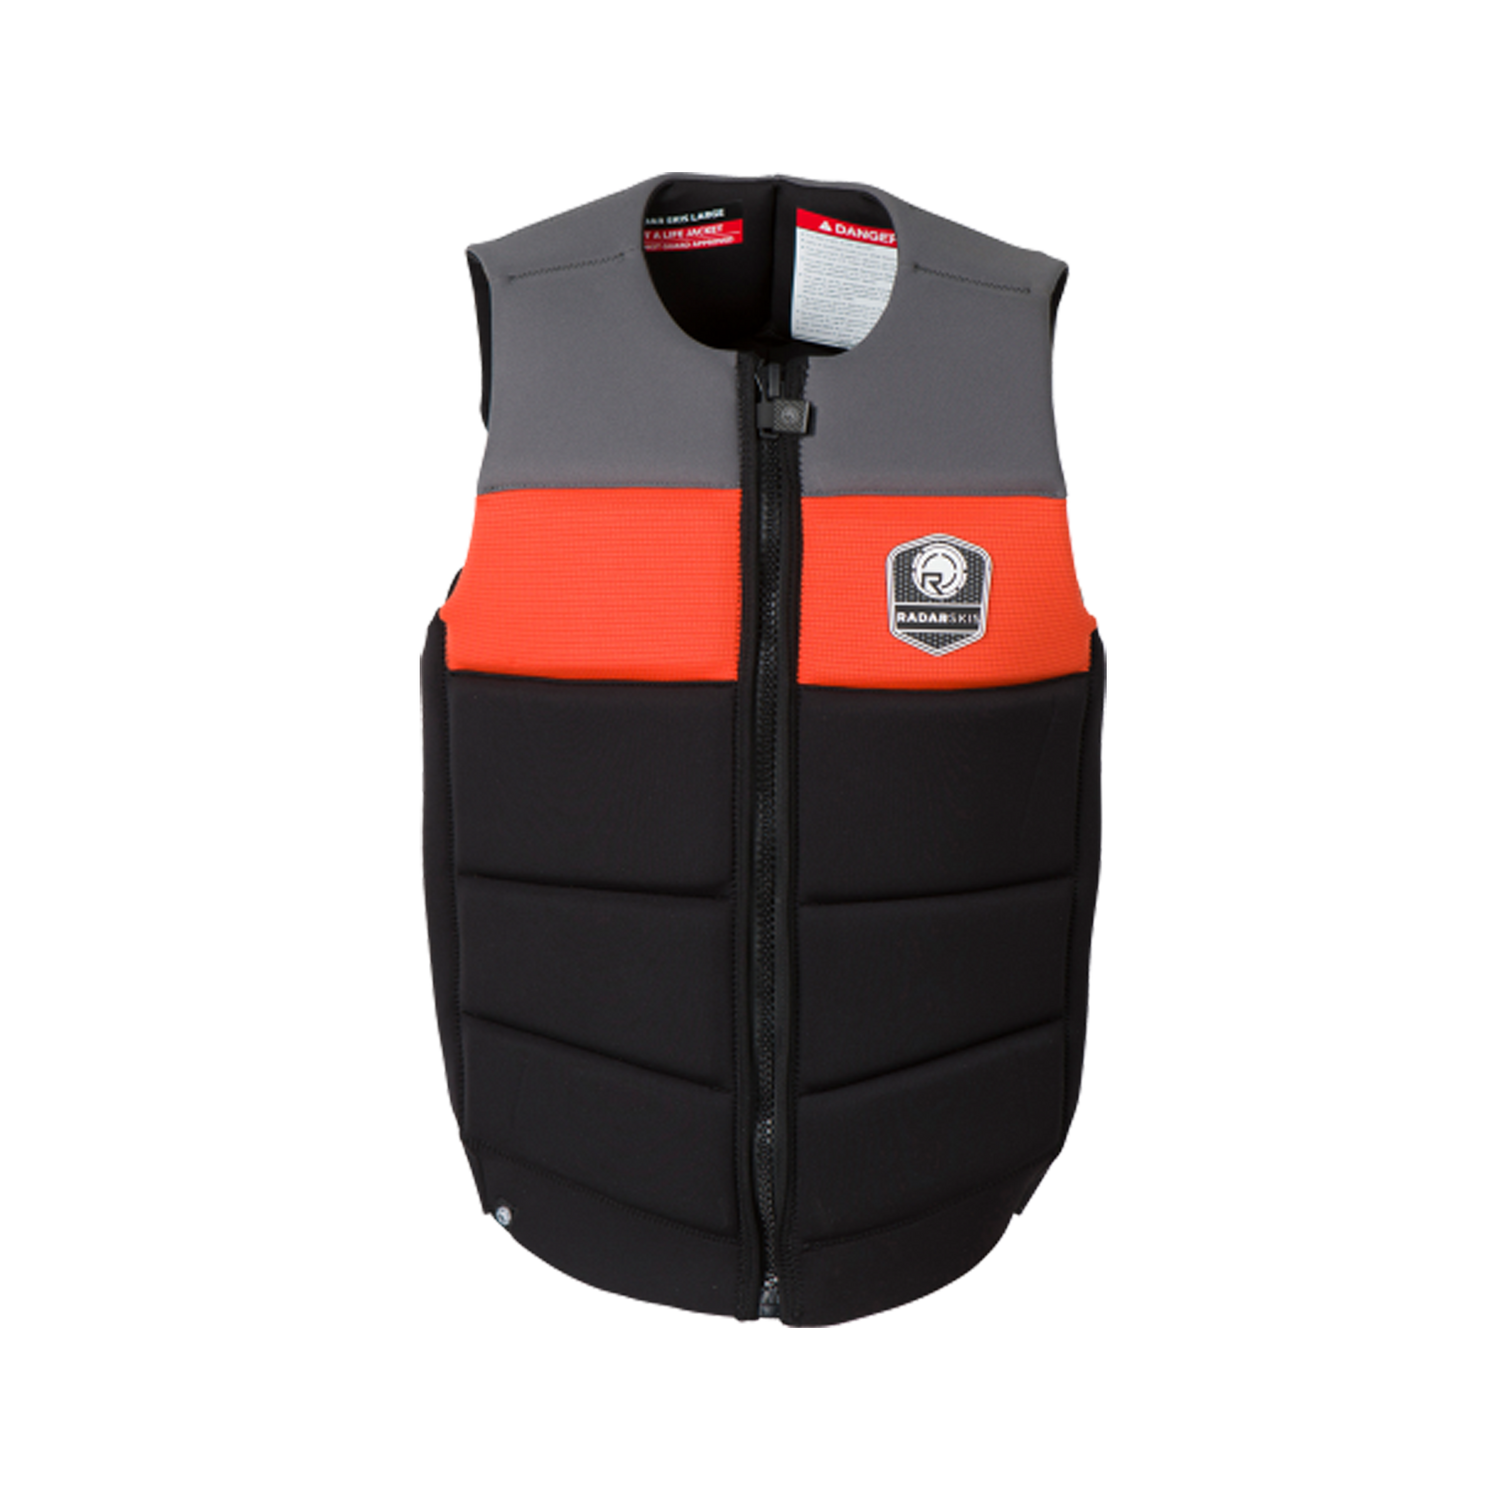 Men's Tidal LTD Vest in colours grey, black, and orange.